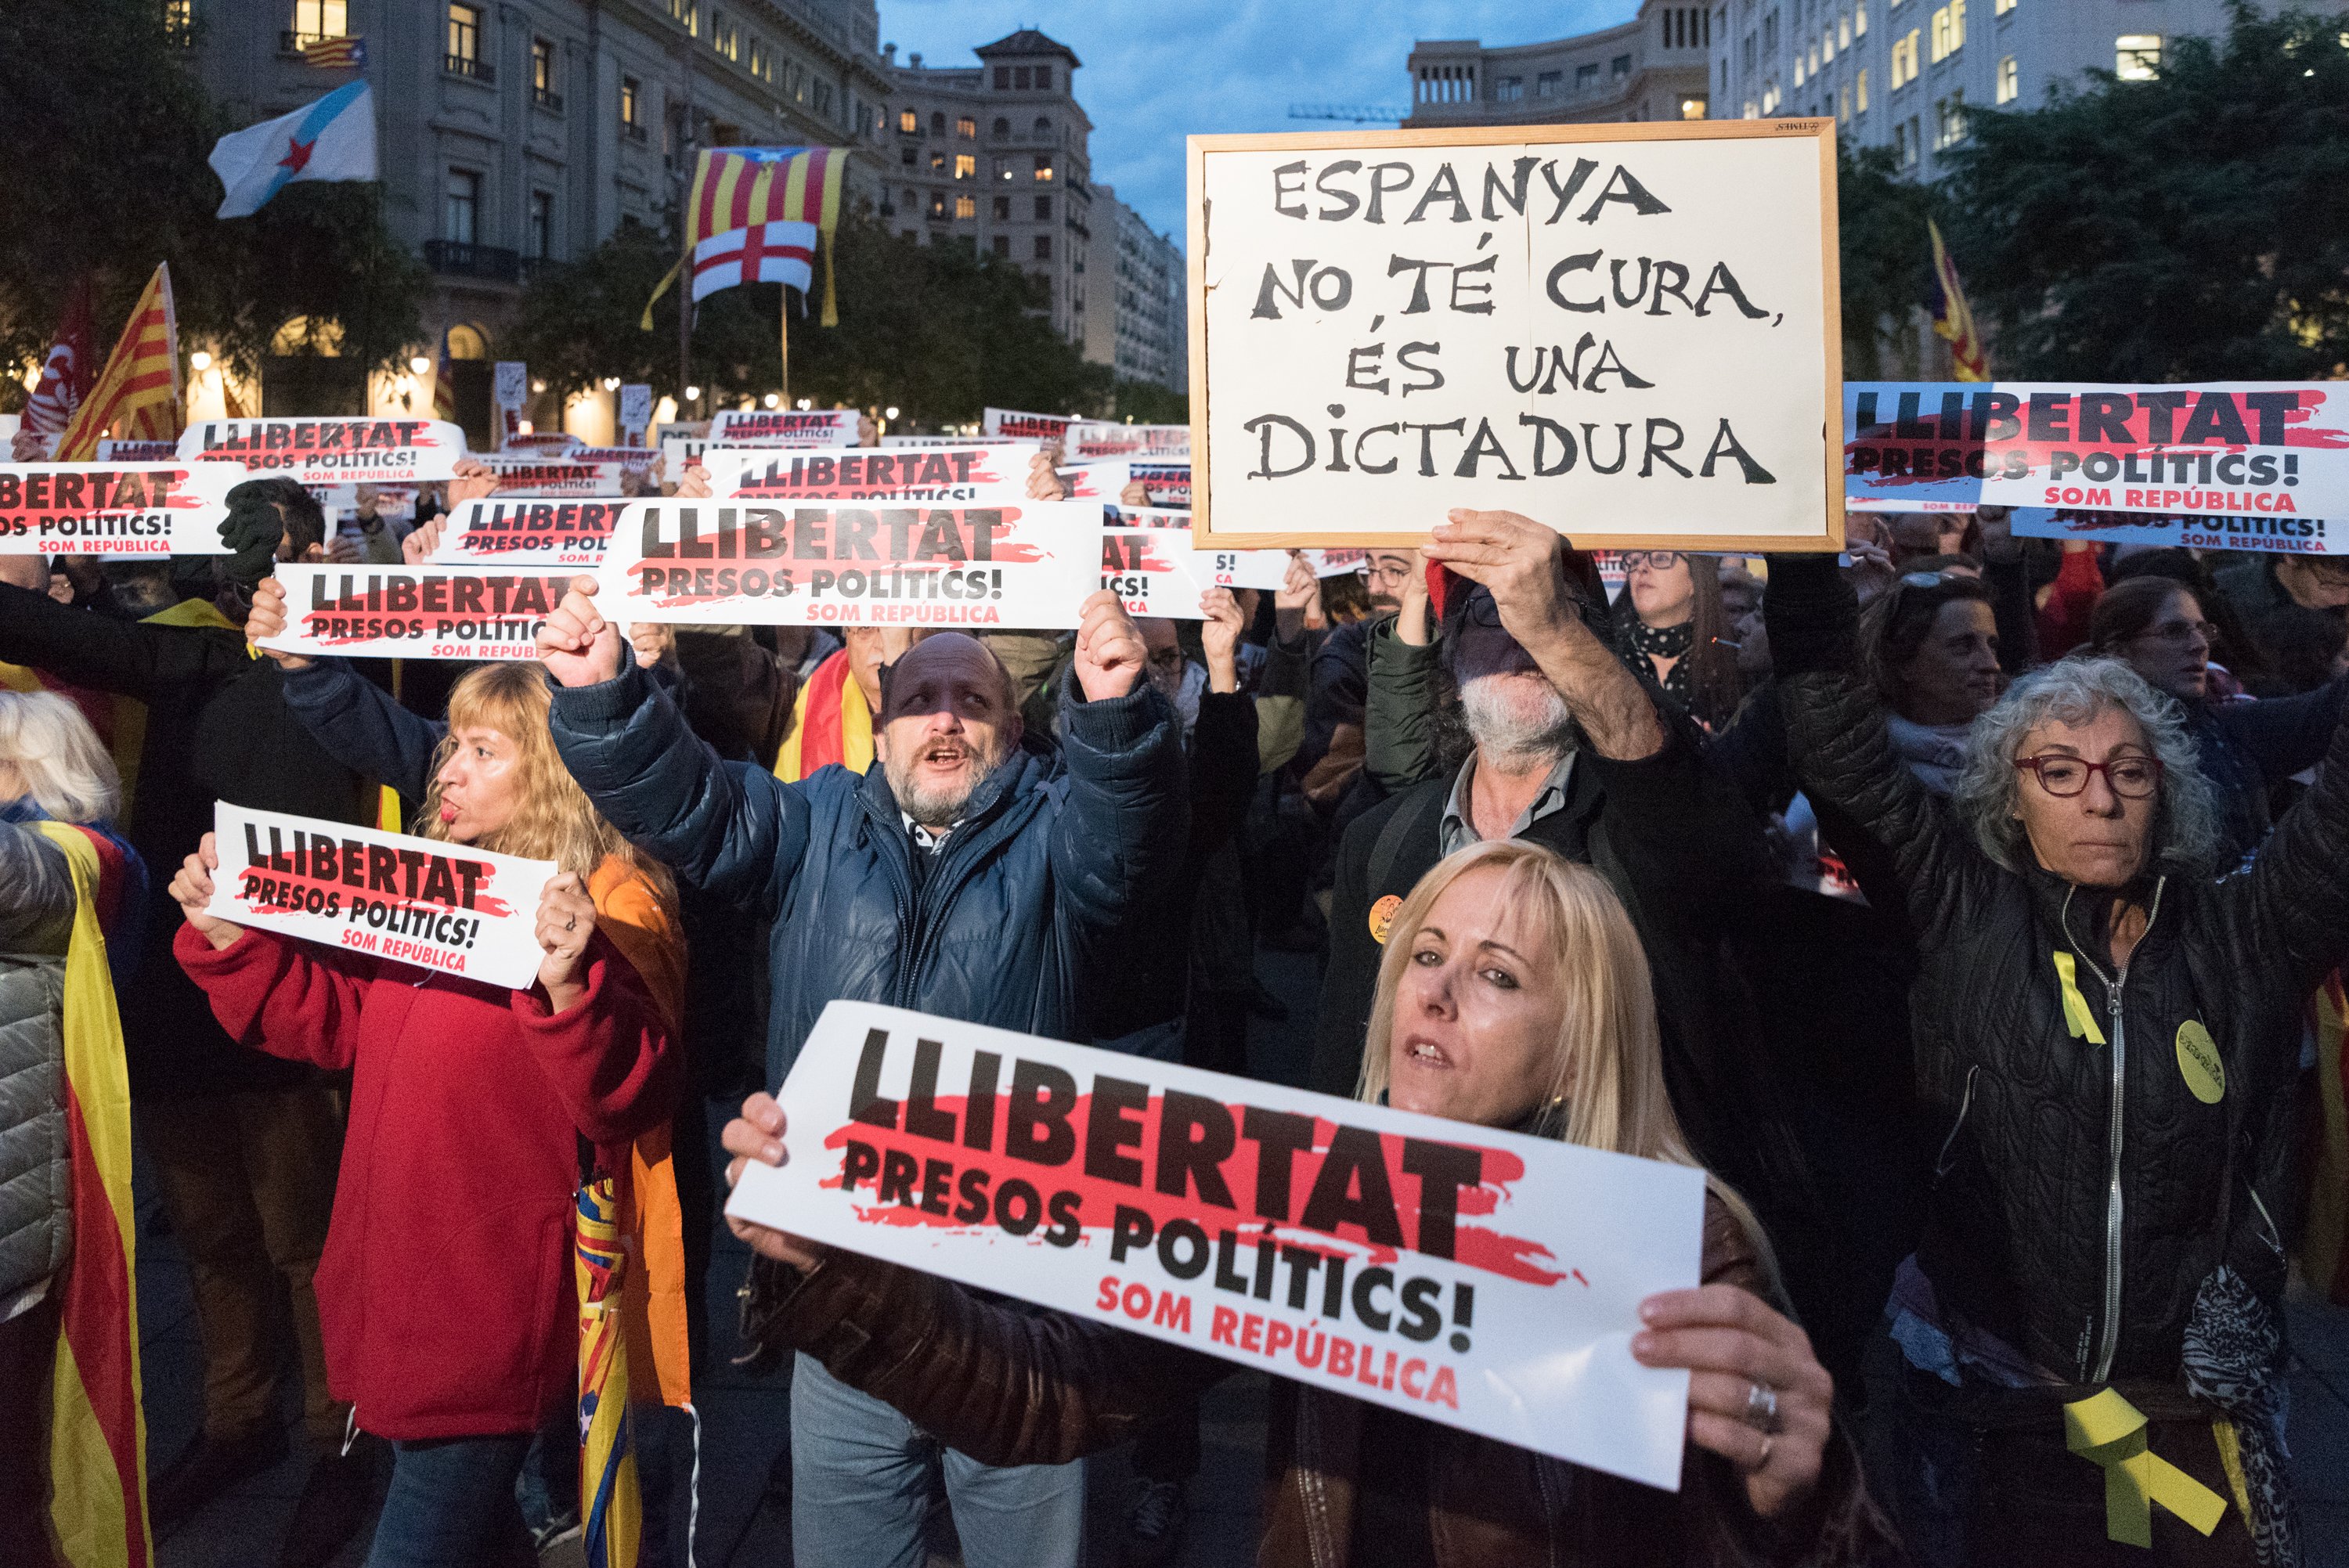 La Federació Sindical Mundial condemna l’autoritarisme de l'Estat espanyol